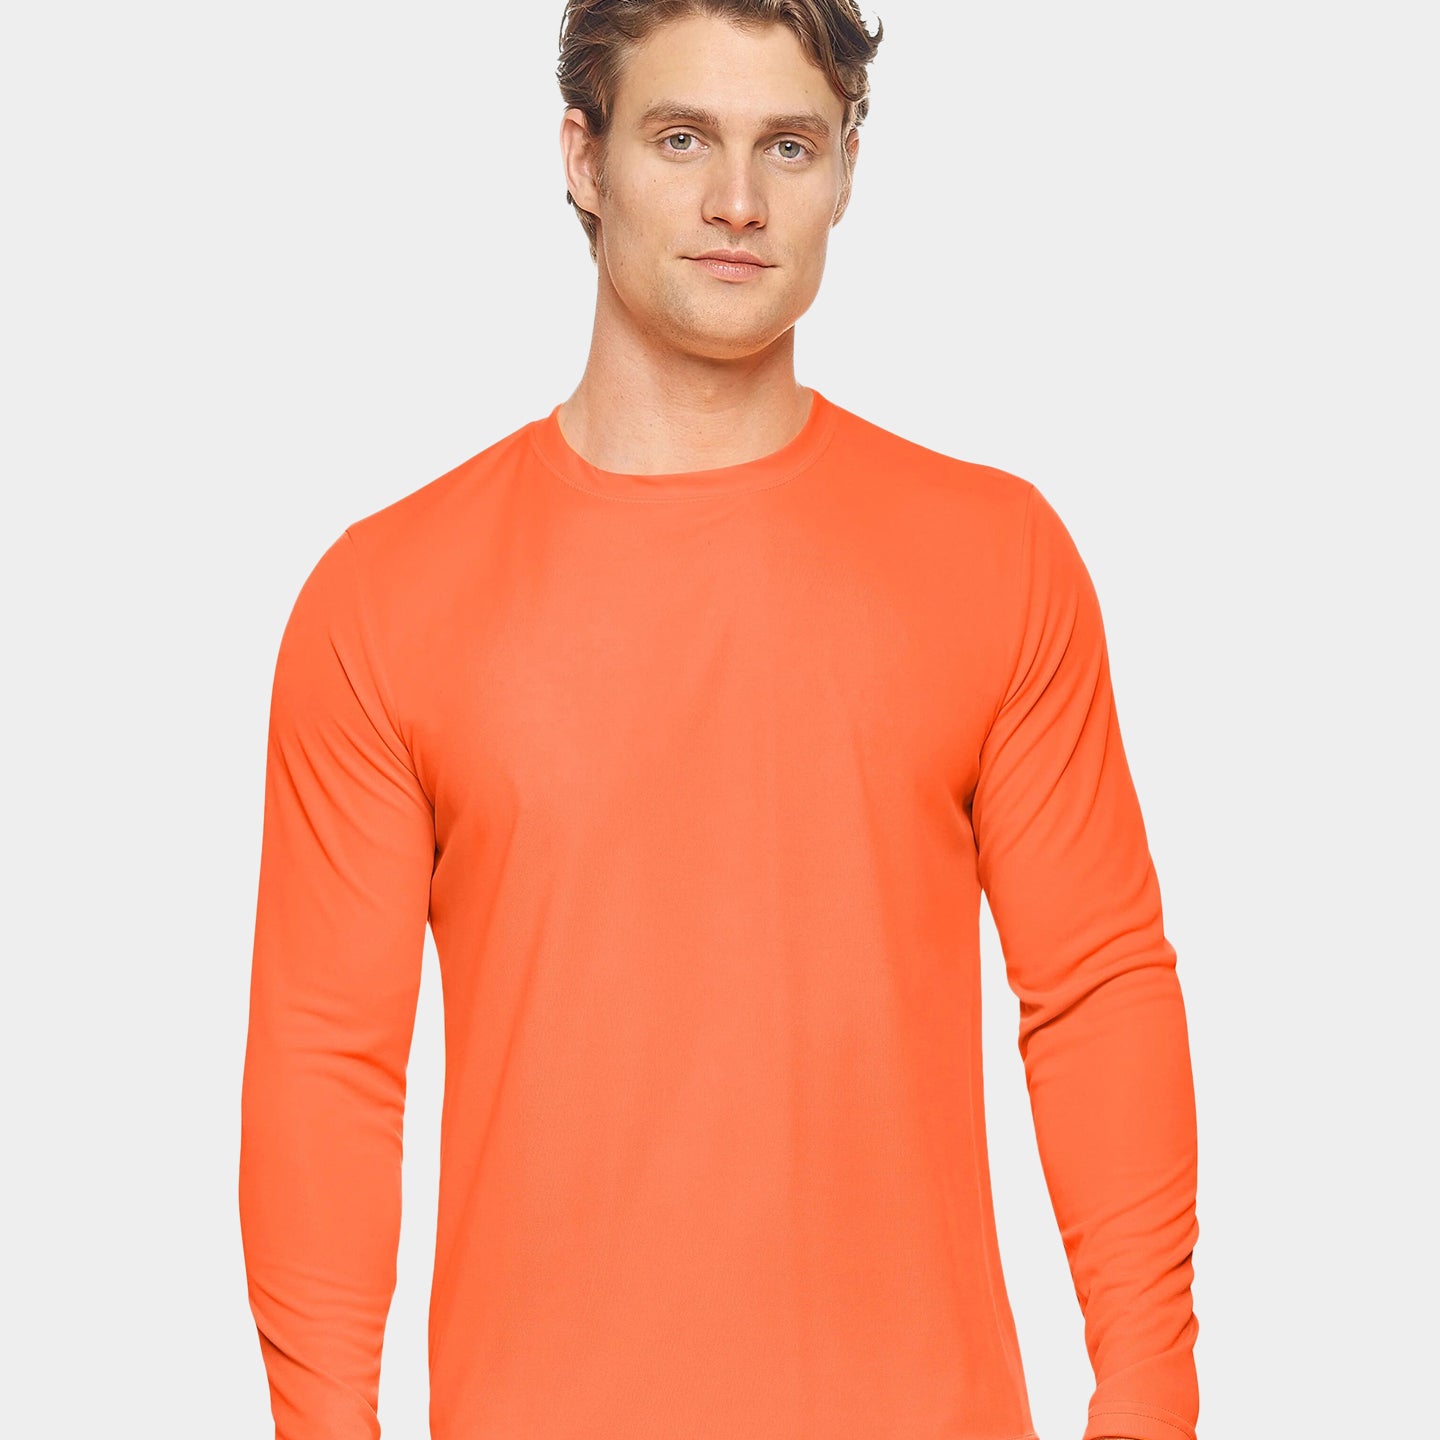 Expert Brand DriMax Men's Performance Long Sleeve Shirt, 2XL, Orange A1